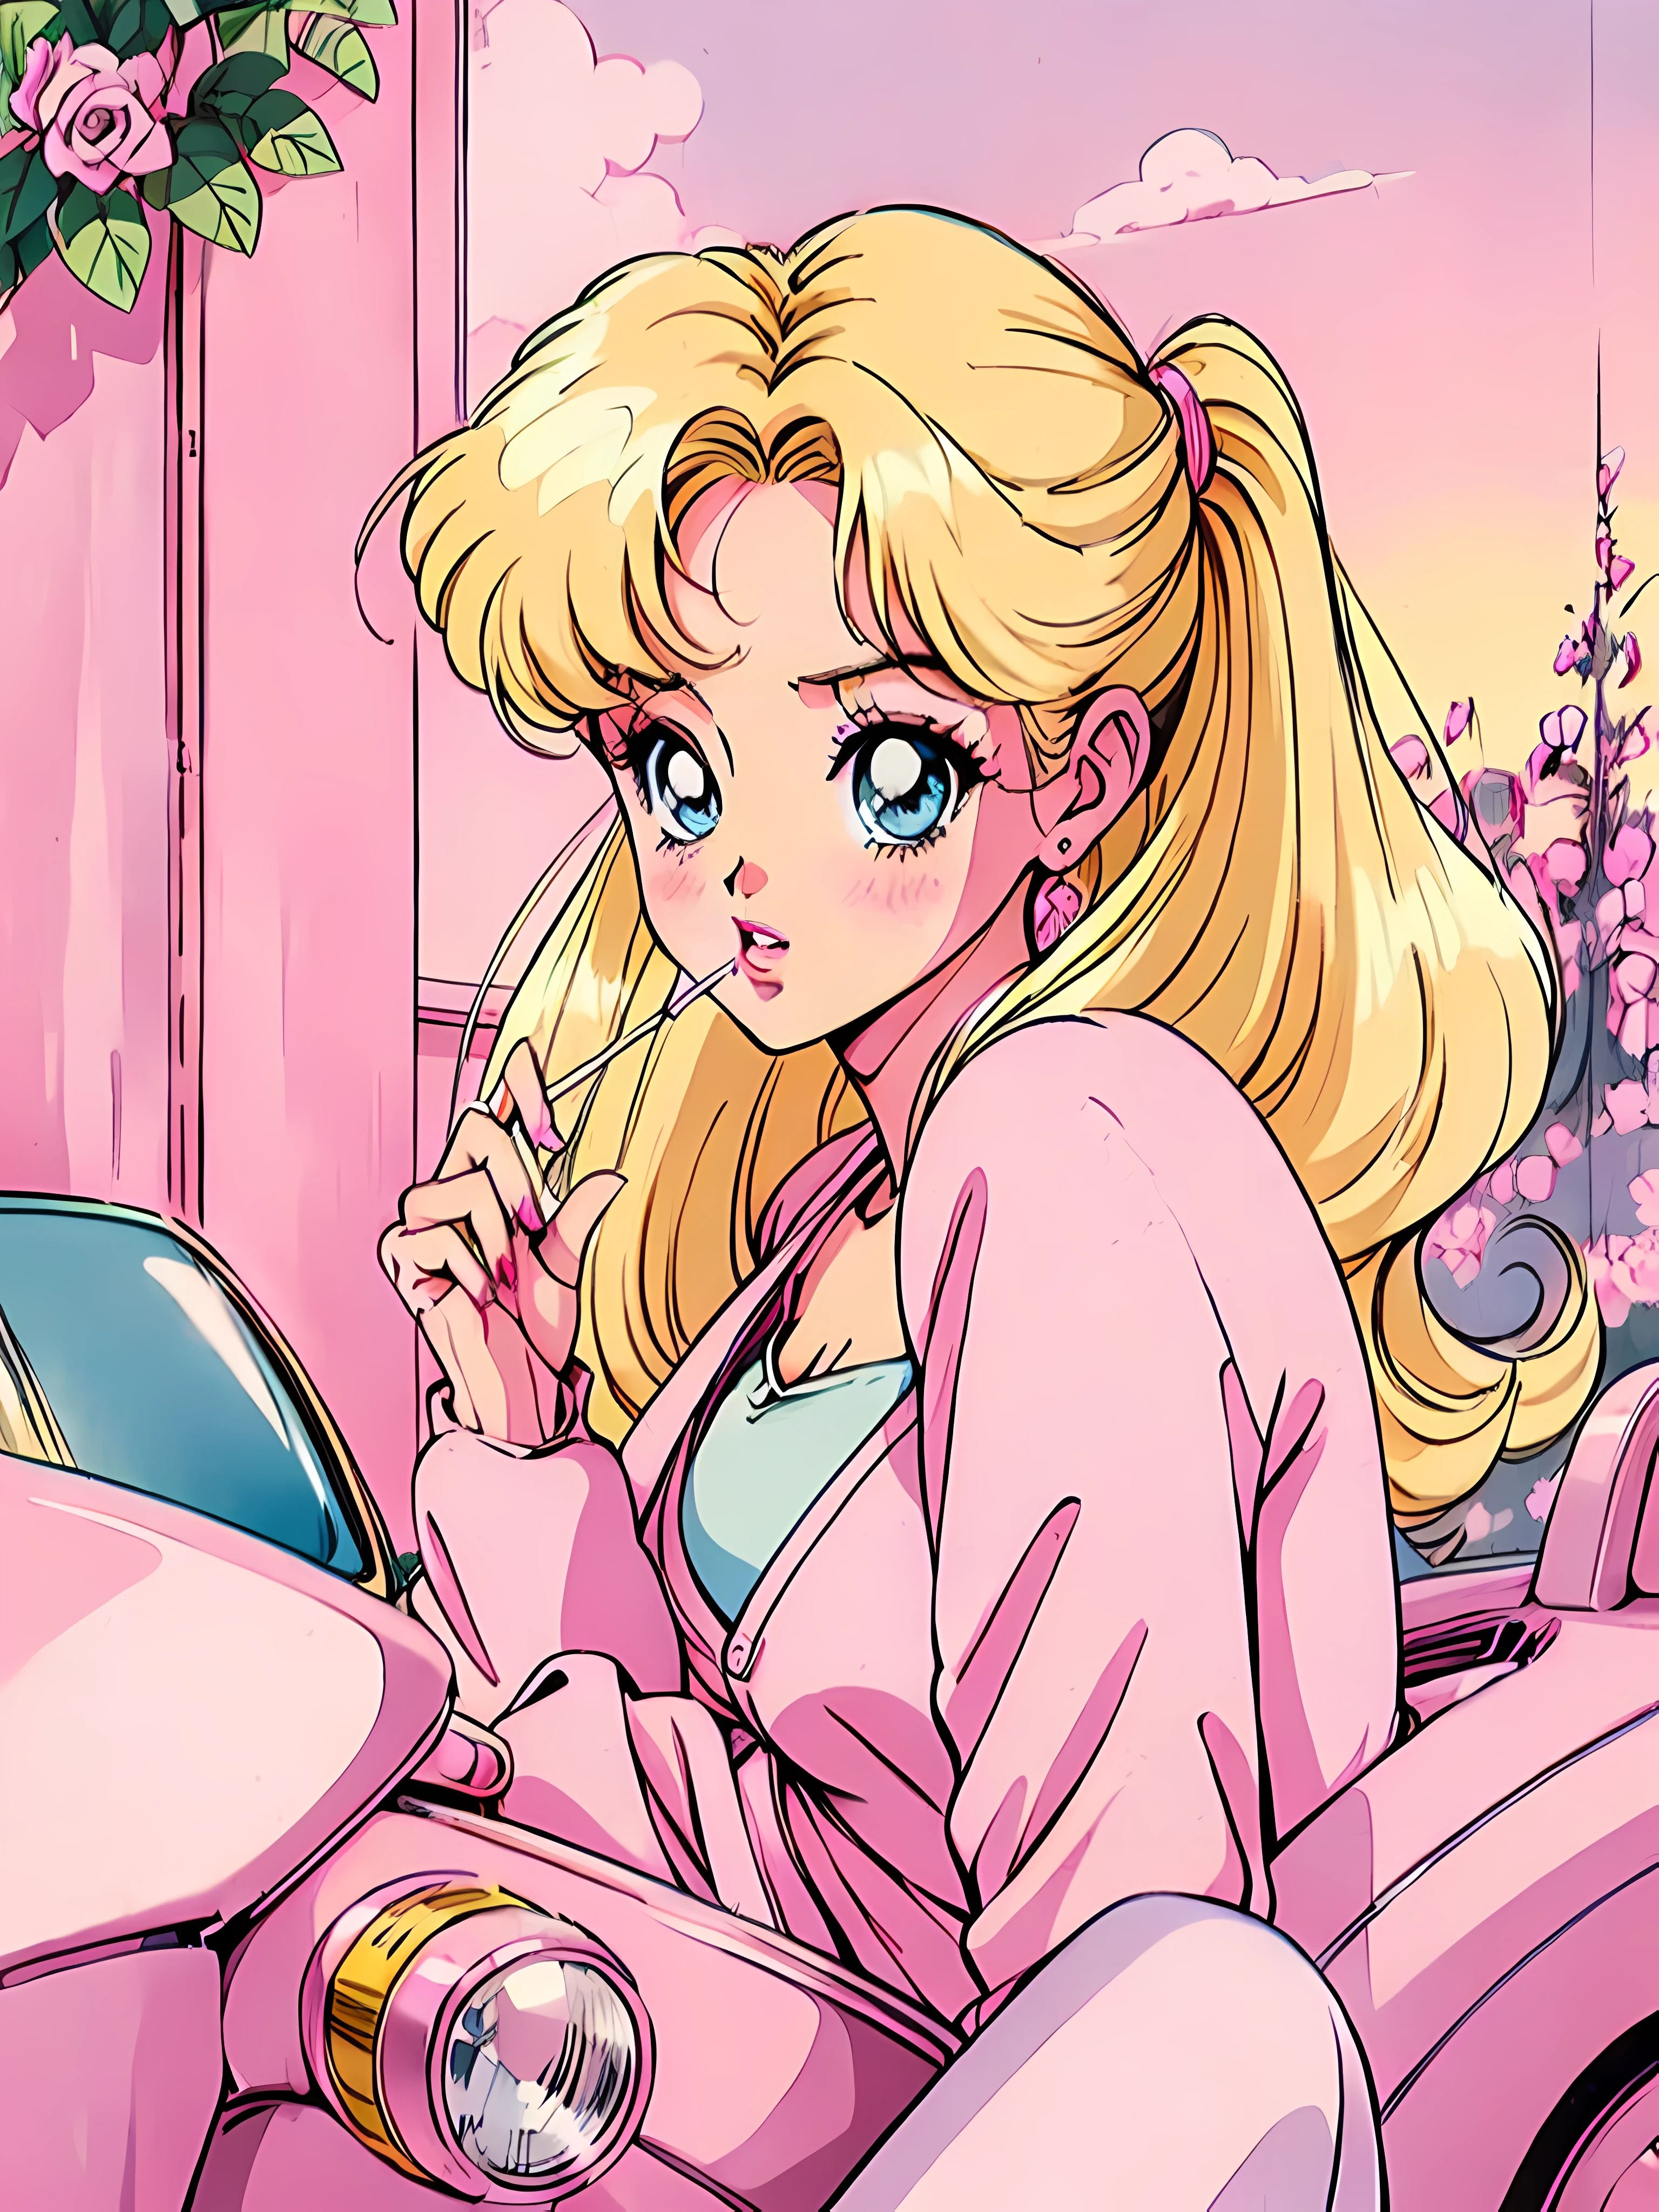 (Barbie blonde:1.2),(tenues roses:1.1),(millésime des années 90:1.1),(style anime romantique:1.3), assis dans une voiture rose, gilet rose, cigarette